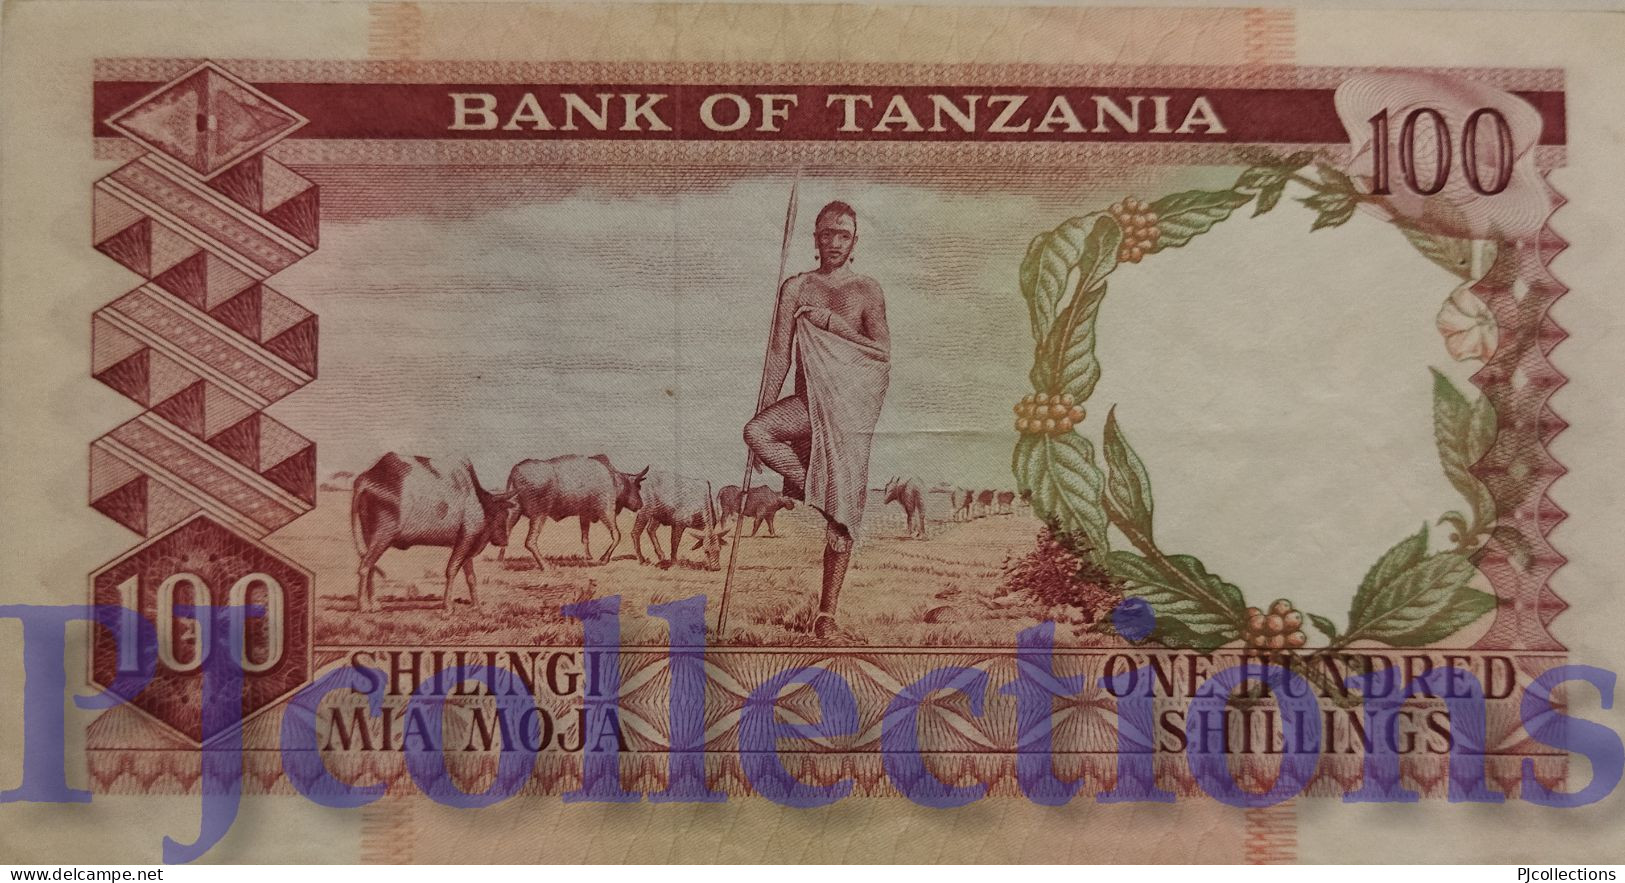 TANZANIA 100 SHILINGI 1966 PICK 4 AU PREFIX "A" W/PIN HOLES RARE - Tansania